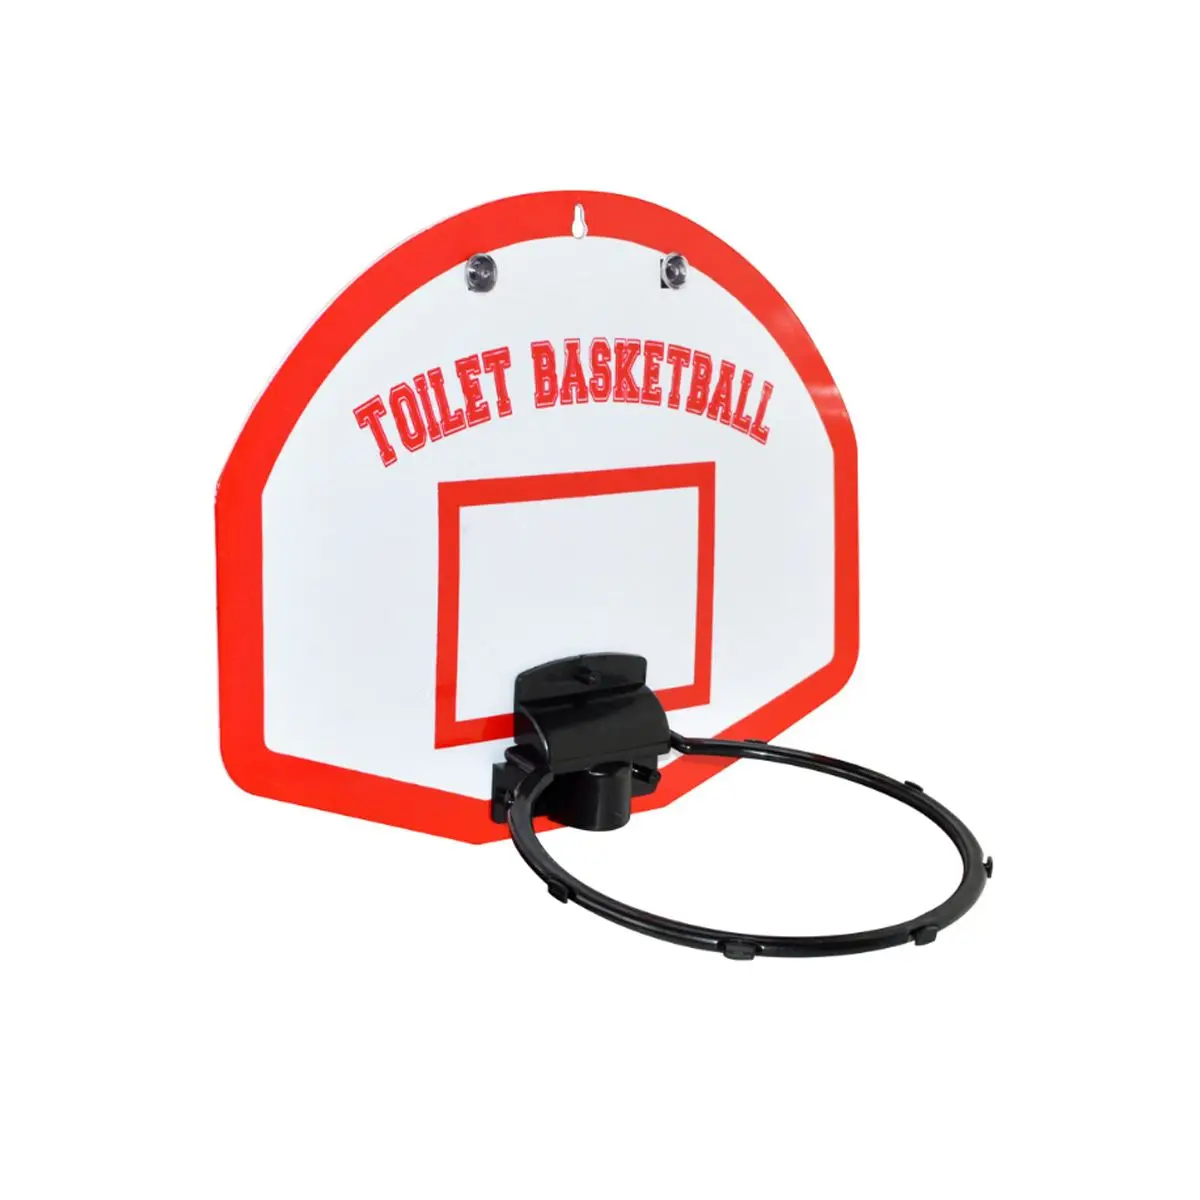 Баскетбольные наборы для туалета 1 корзина+ 3 баскетбольные мяча детские игрушки для ванной Забавный Туалет баскетбольная игра игрушка для детей и взрослых Спорт внутри помещения обучение